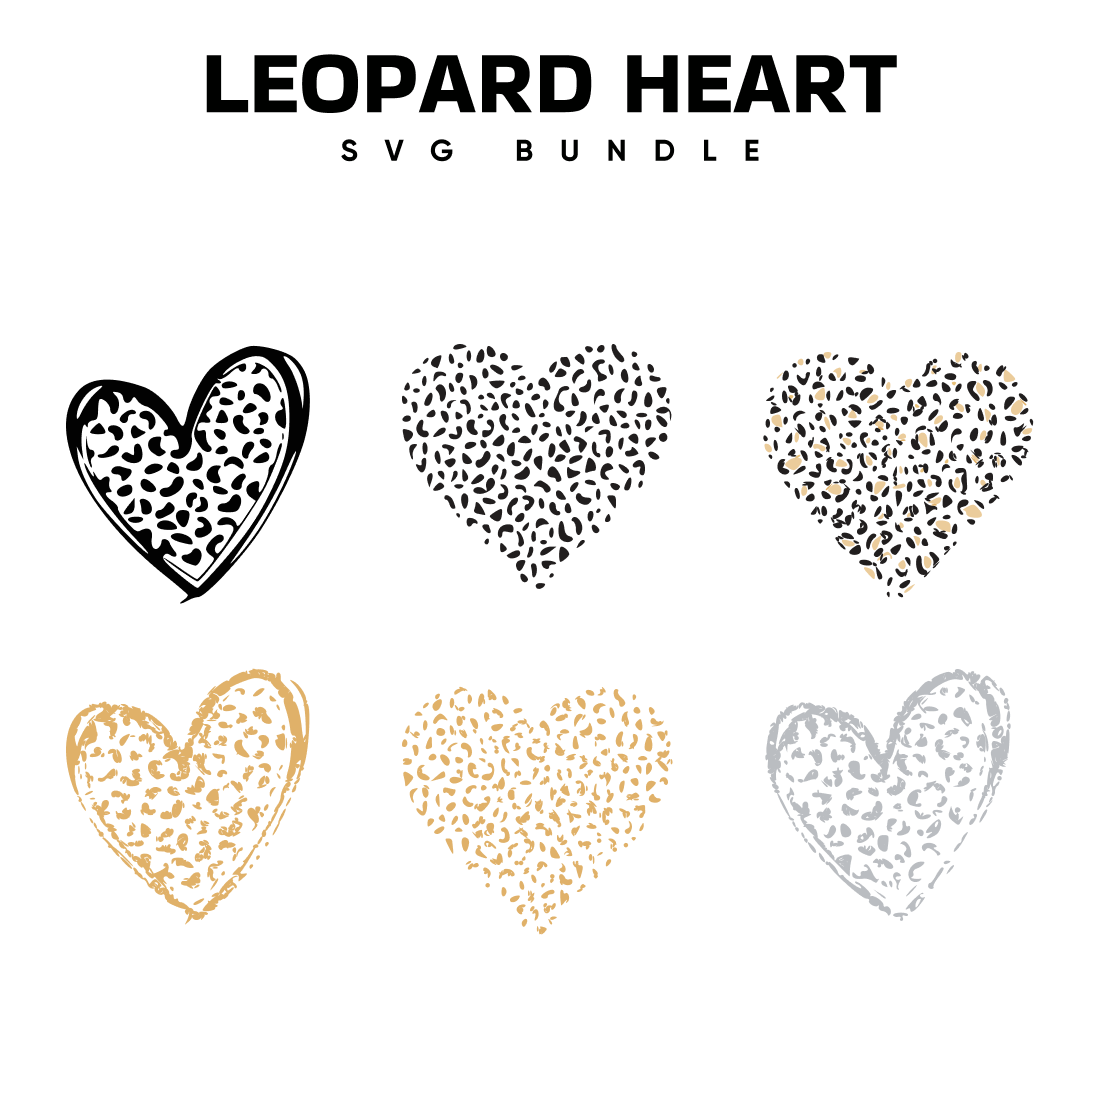 The leopard heart svg bundle.